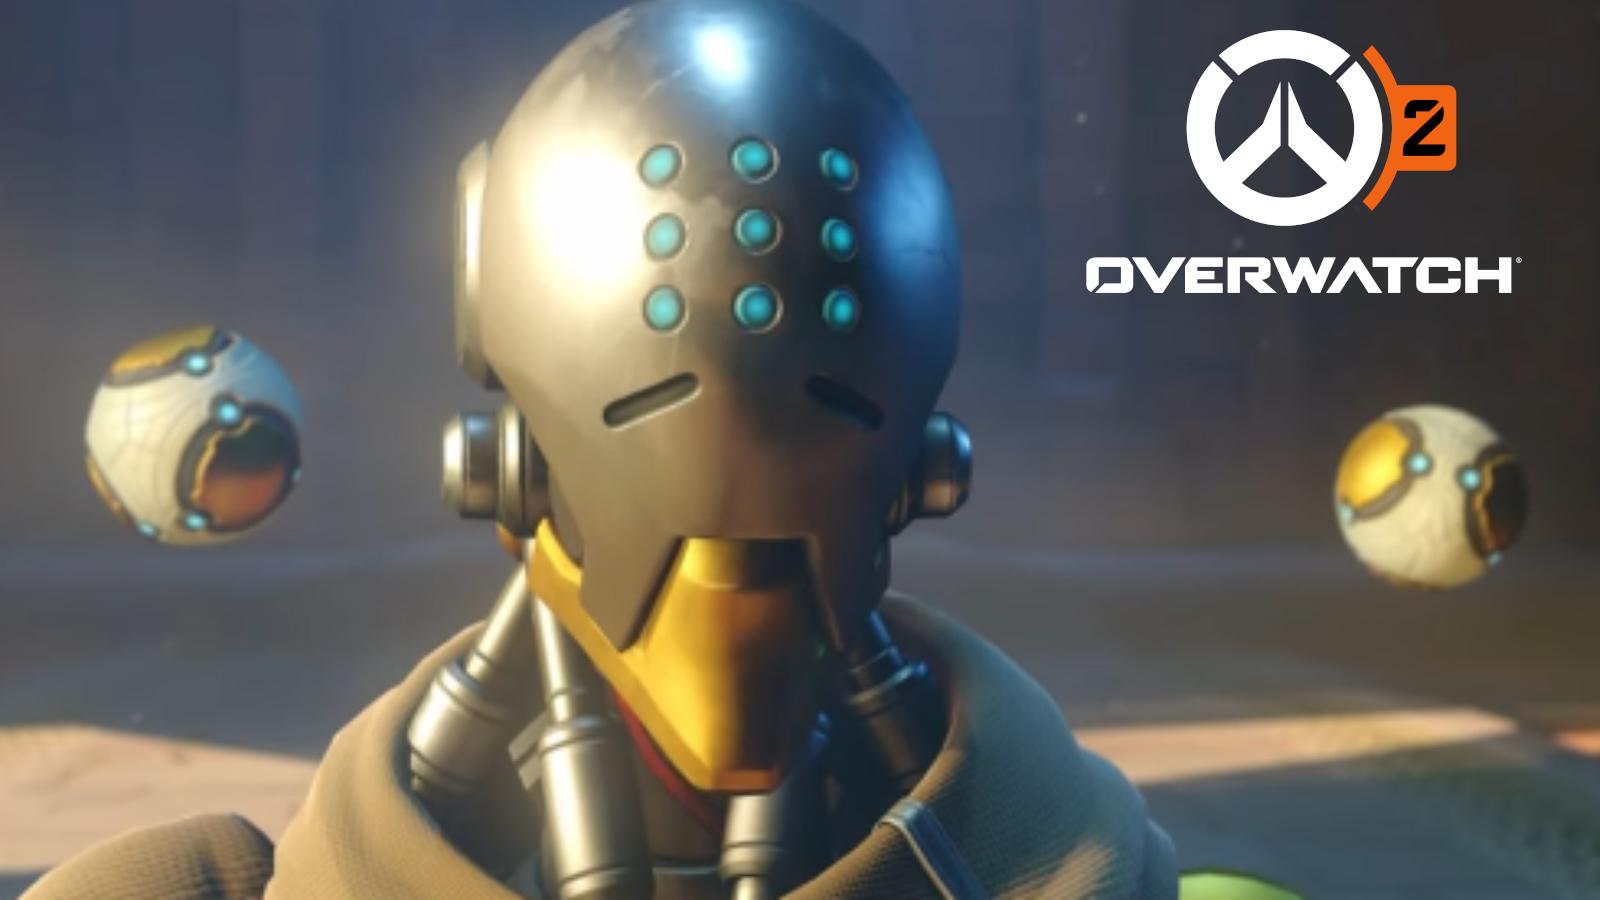 zenyatta next to overwatch 2 logo in invasion ending